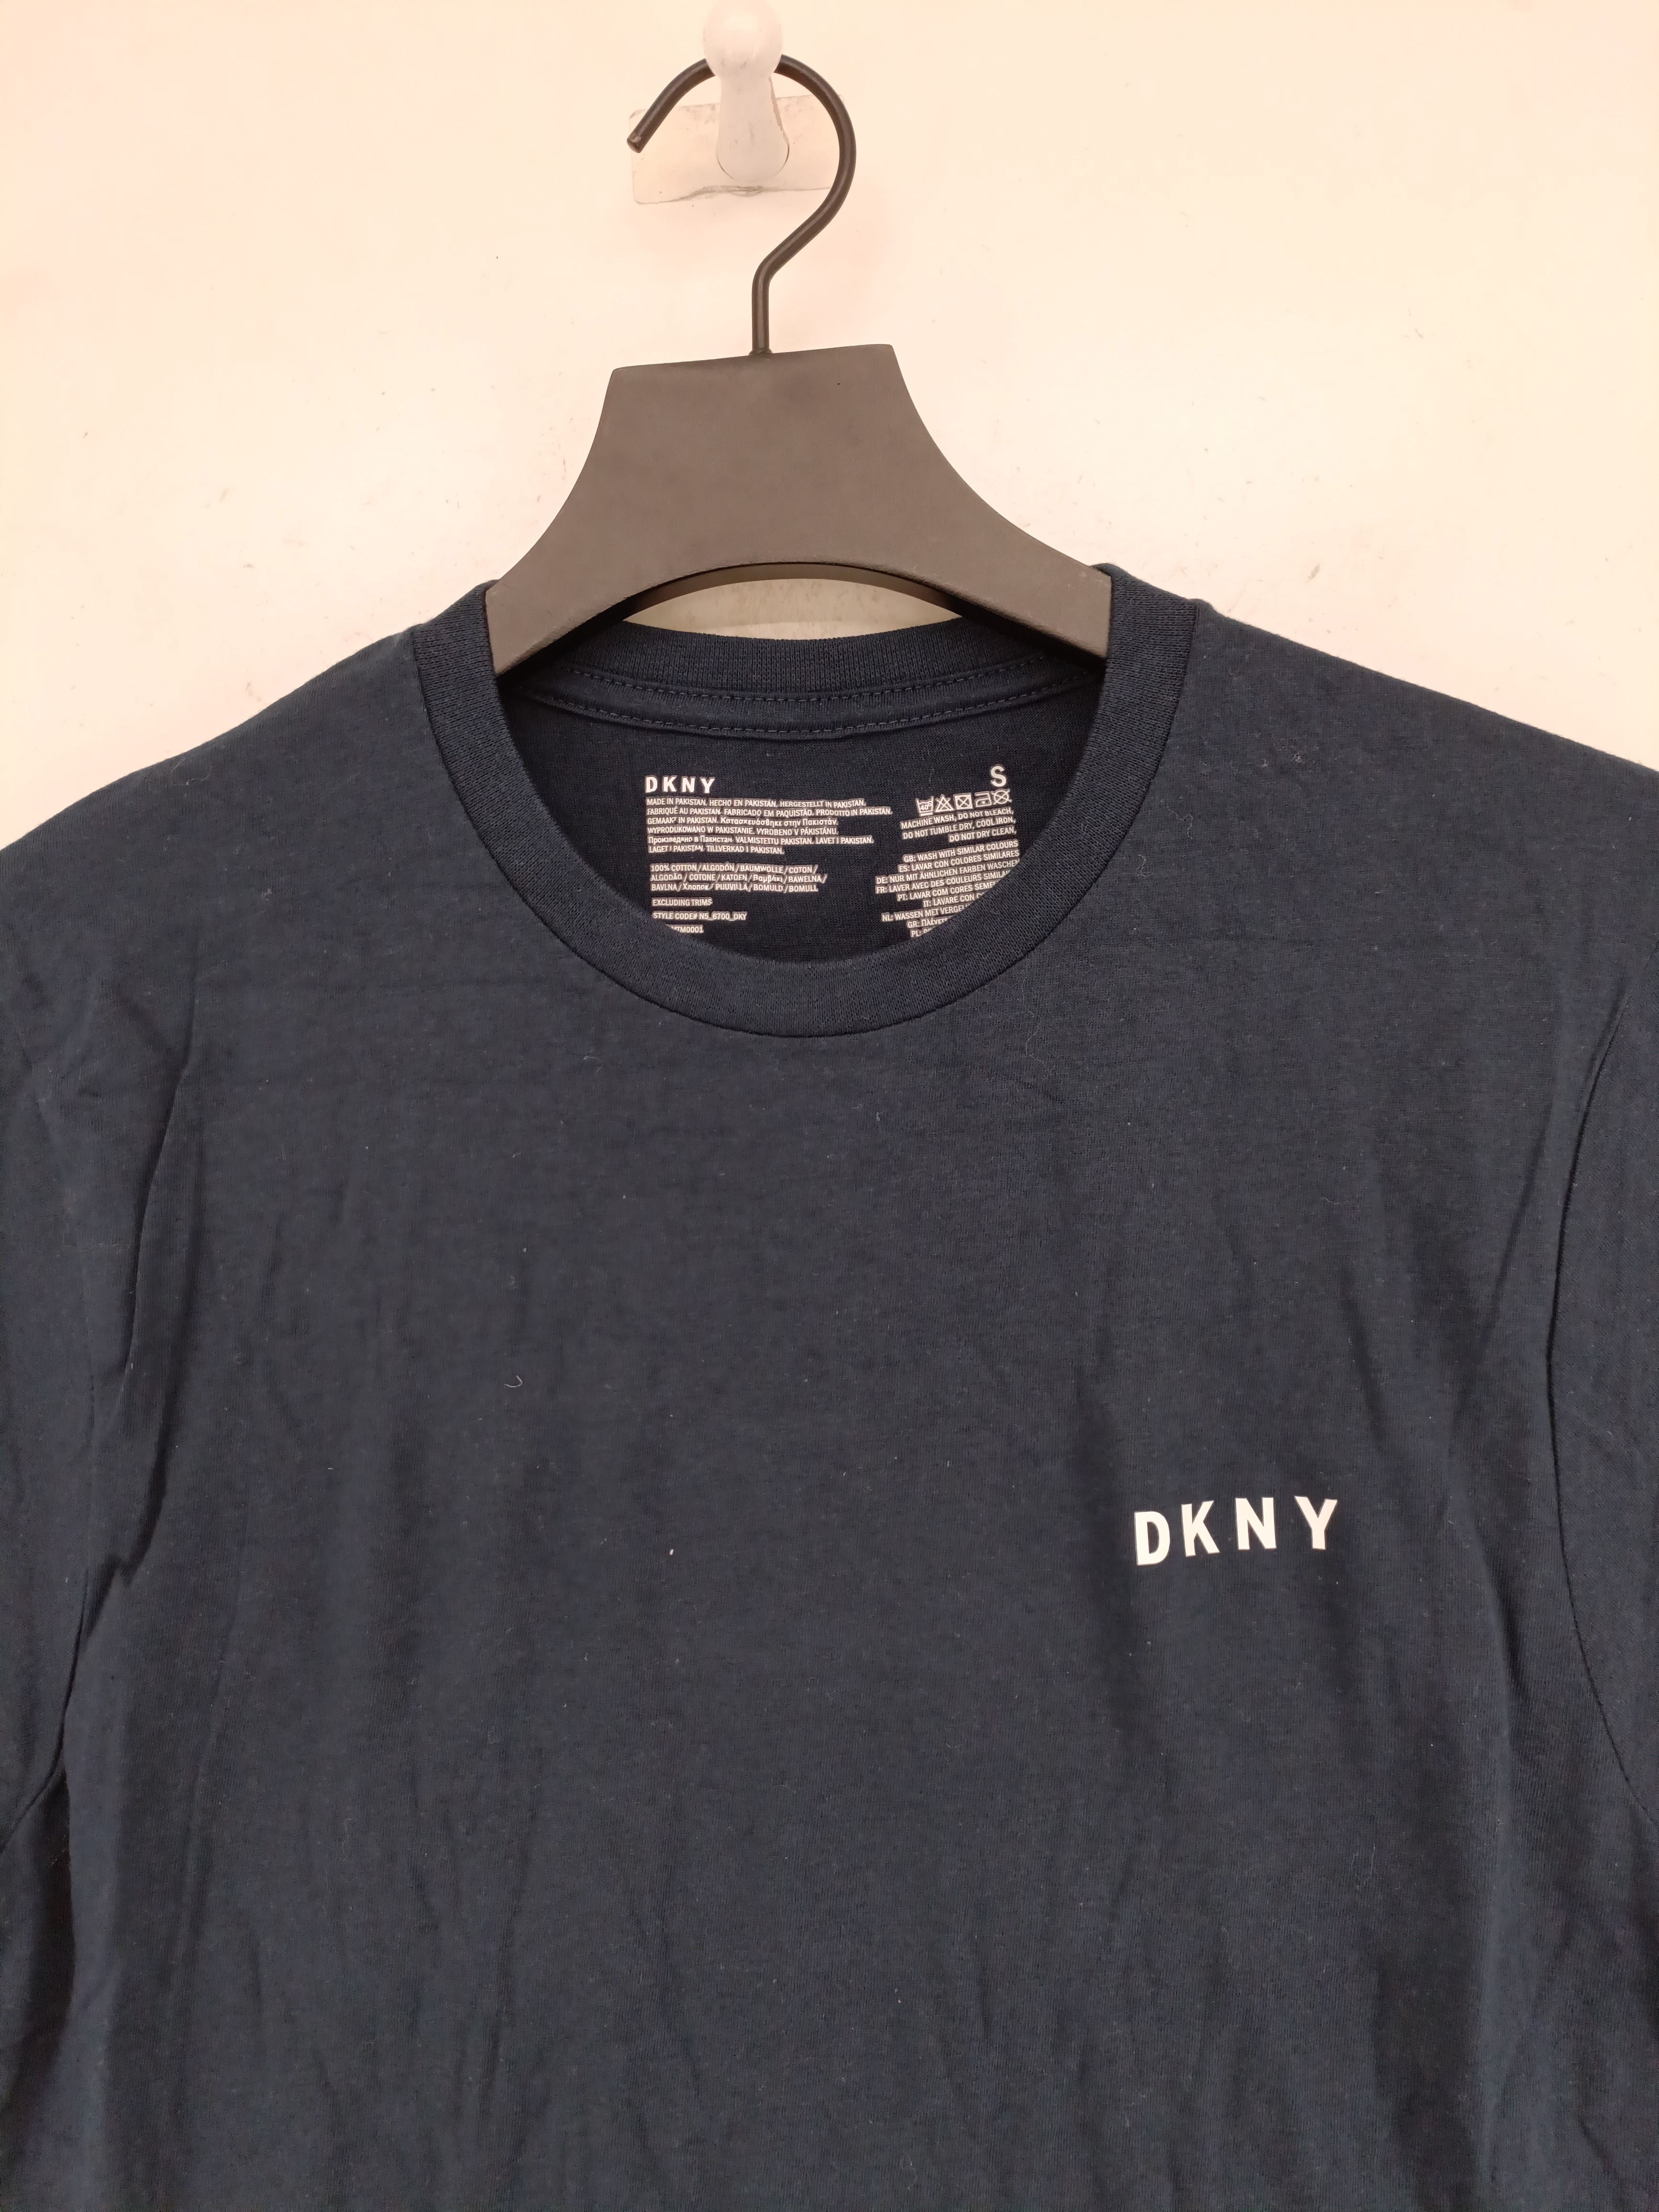 Dkny Men's T-Shirt S Blue 100% Cotton